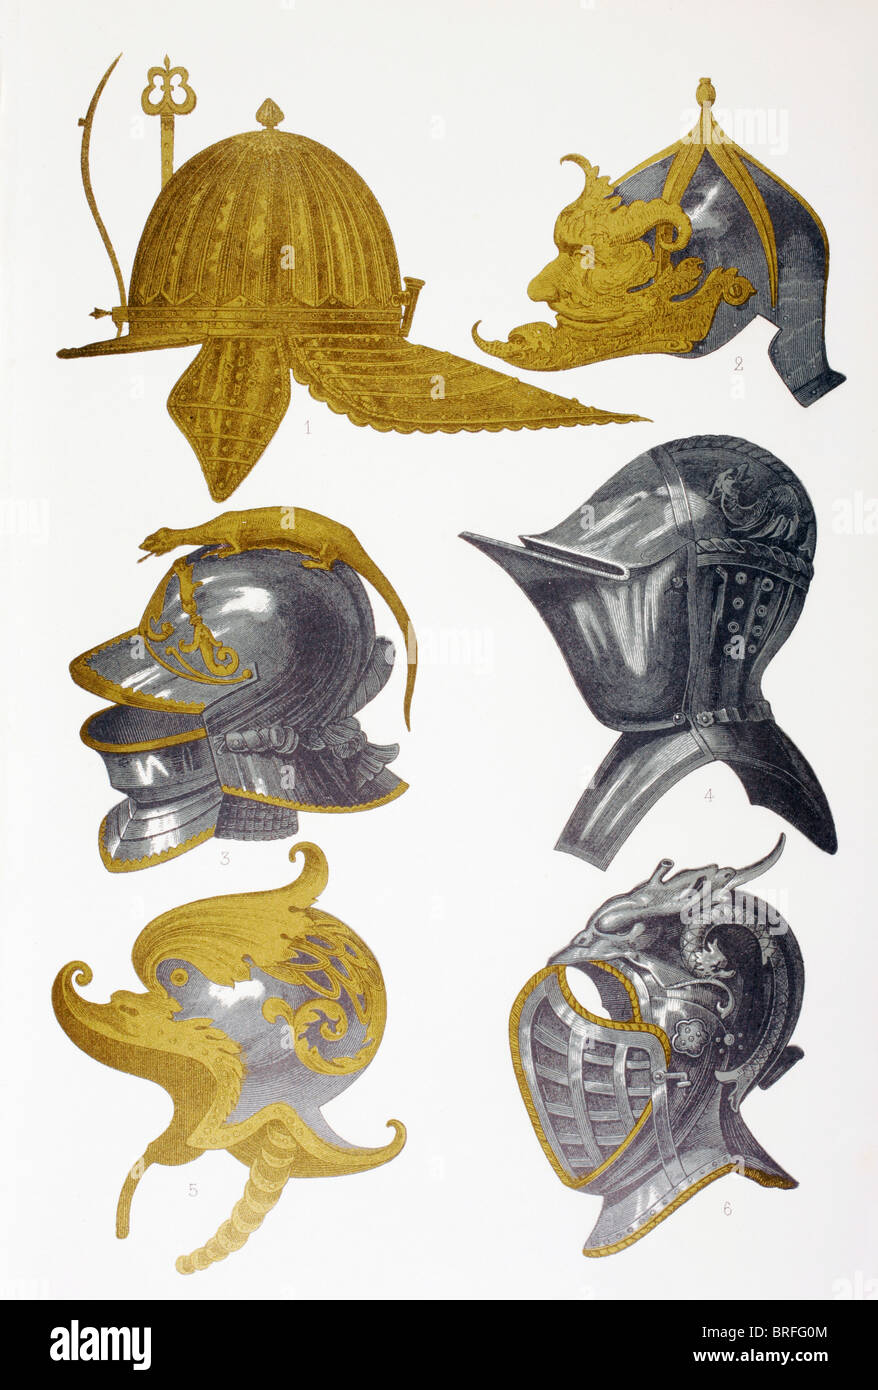 Des casques. 1. Post-Renaissance capeline casque. 2. Morion casque. 3, 4 et 6. Casques Visored. 5. Casque décoré. Banque D'Images